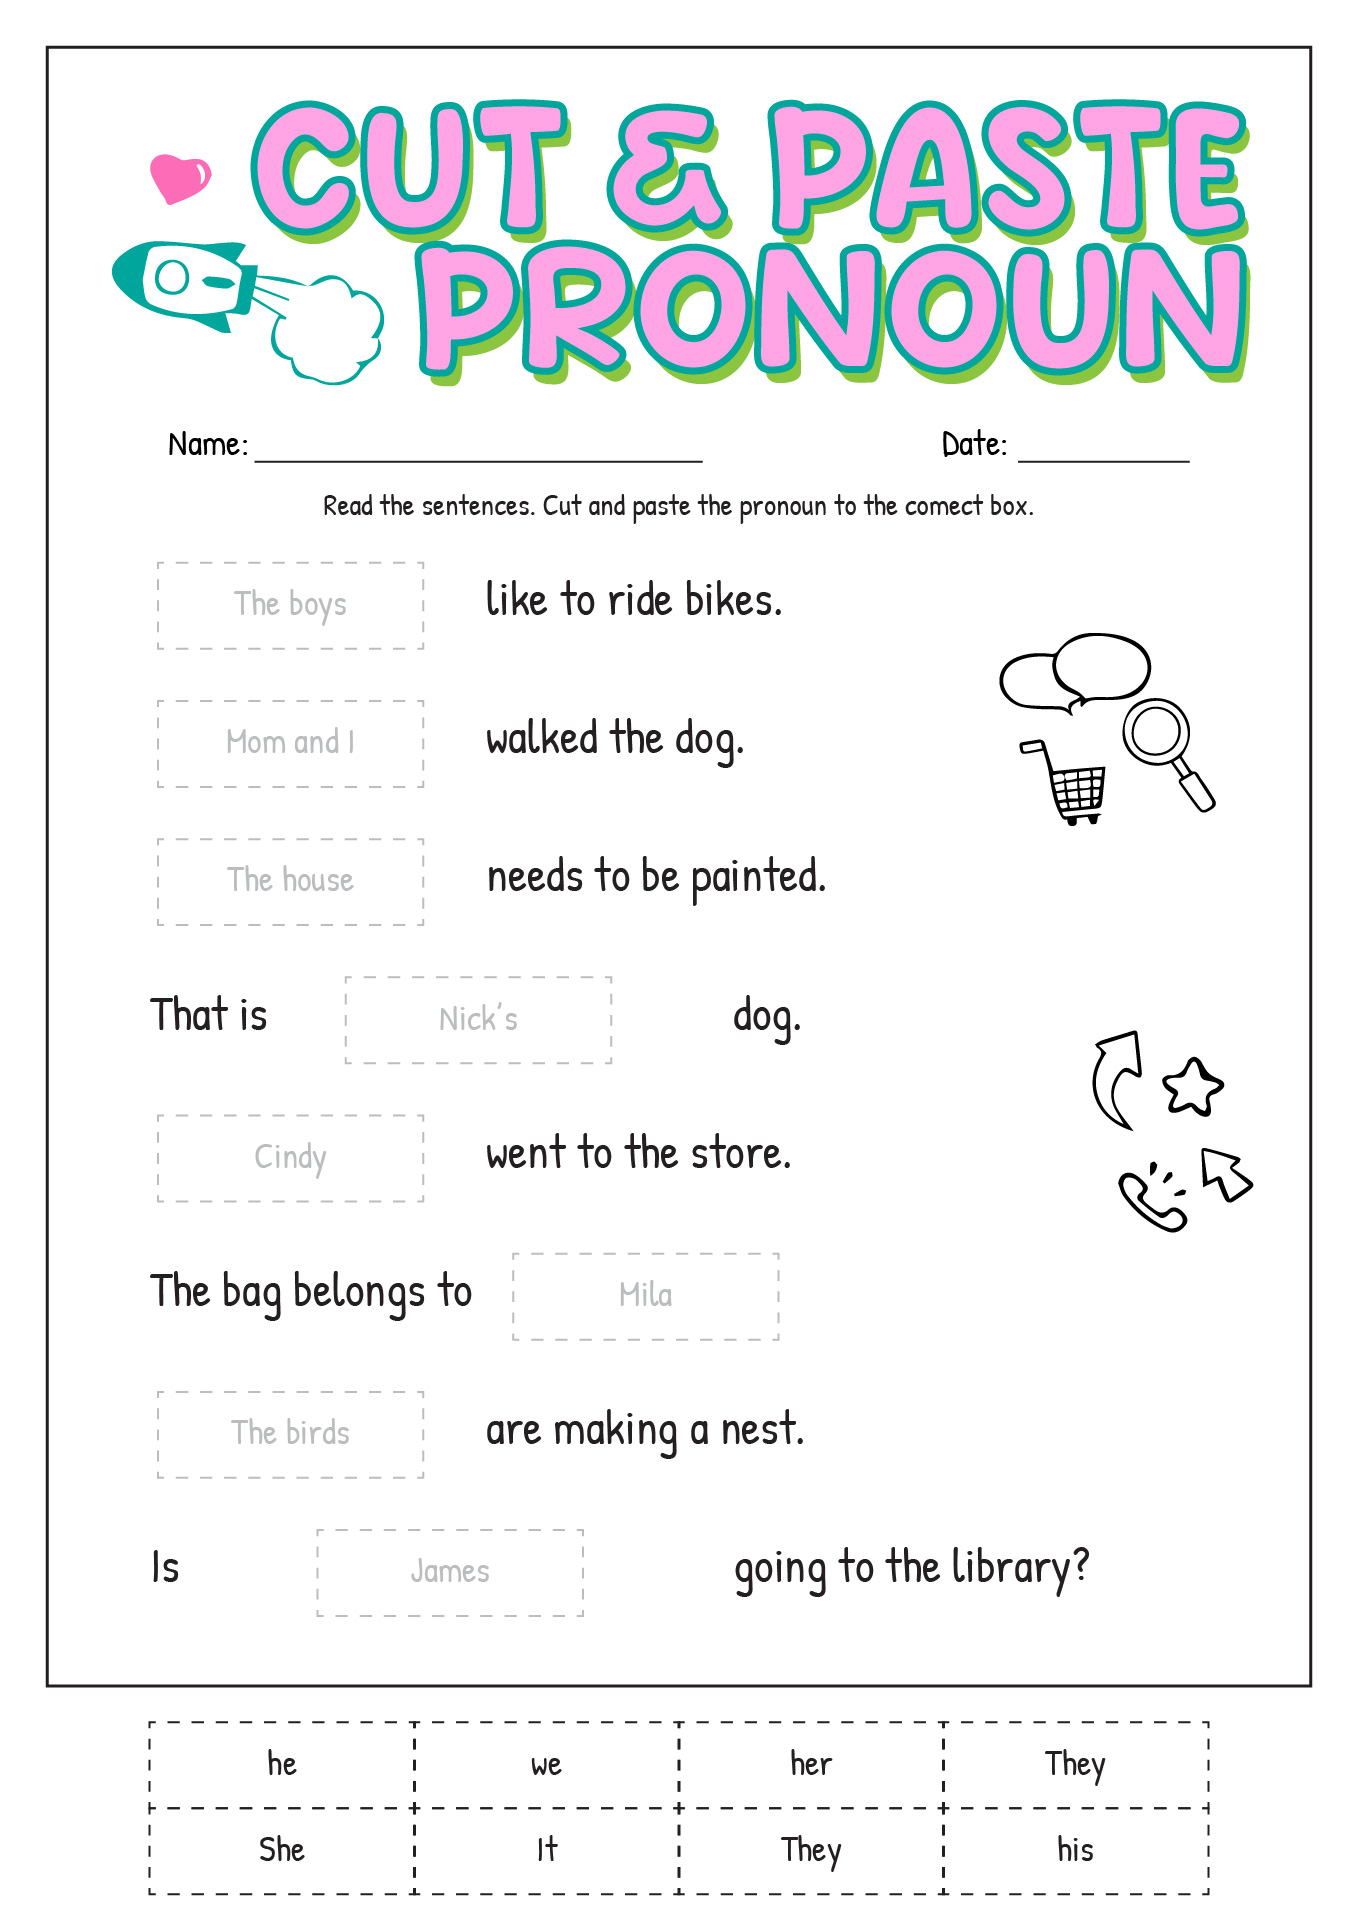 Cut and Paste Pronoun Worksheet Image